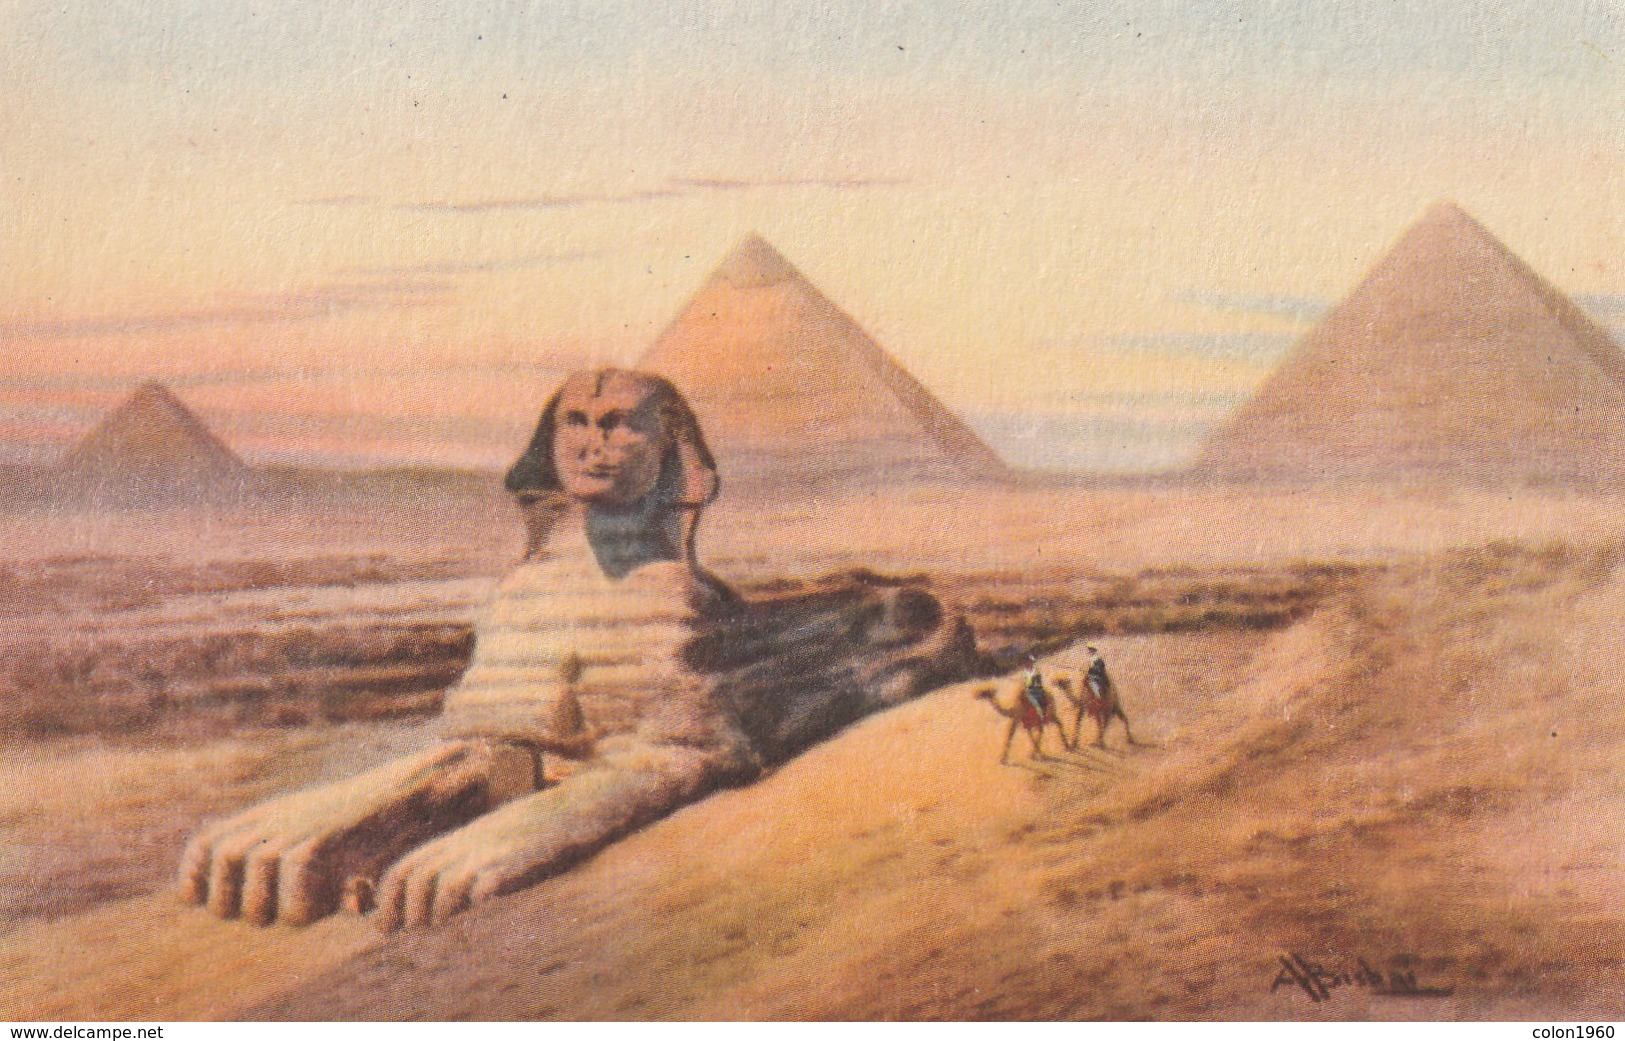 POSTAL ANTIGUA DE EGIPTO. THE SPHINX & THE THREE PYRAMIDS OF GIZA. Nº 112. (1027). - Historia